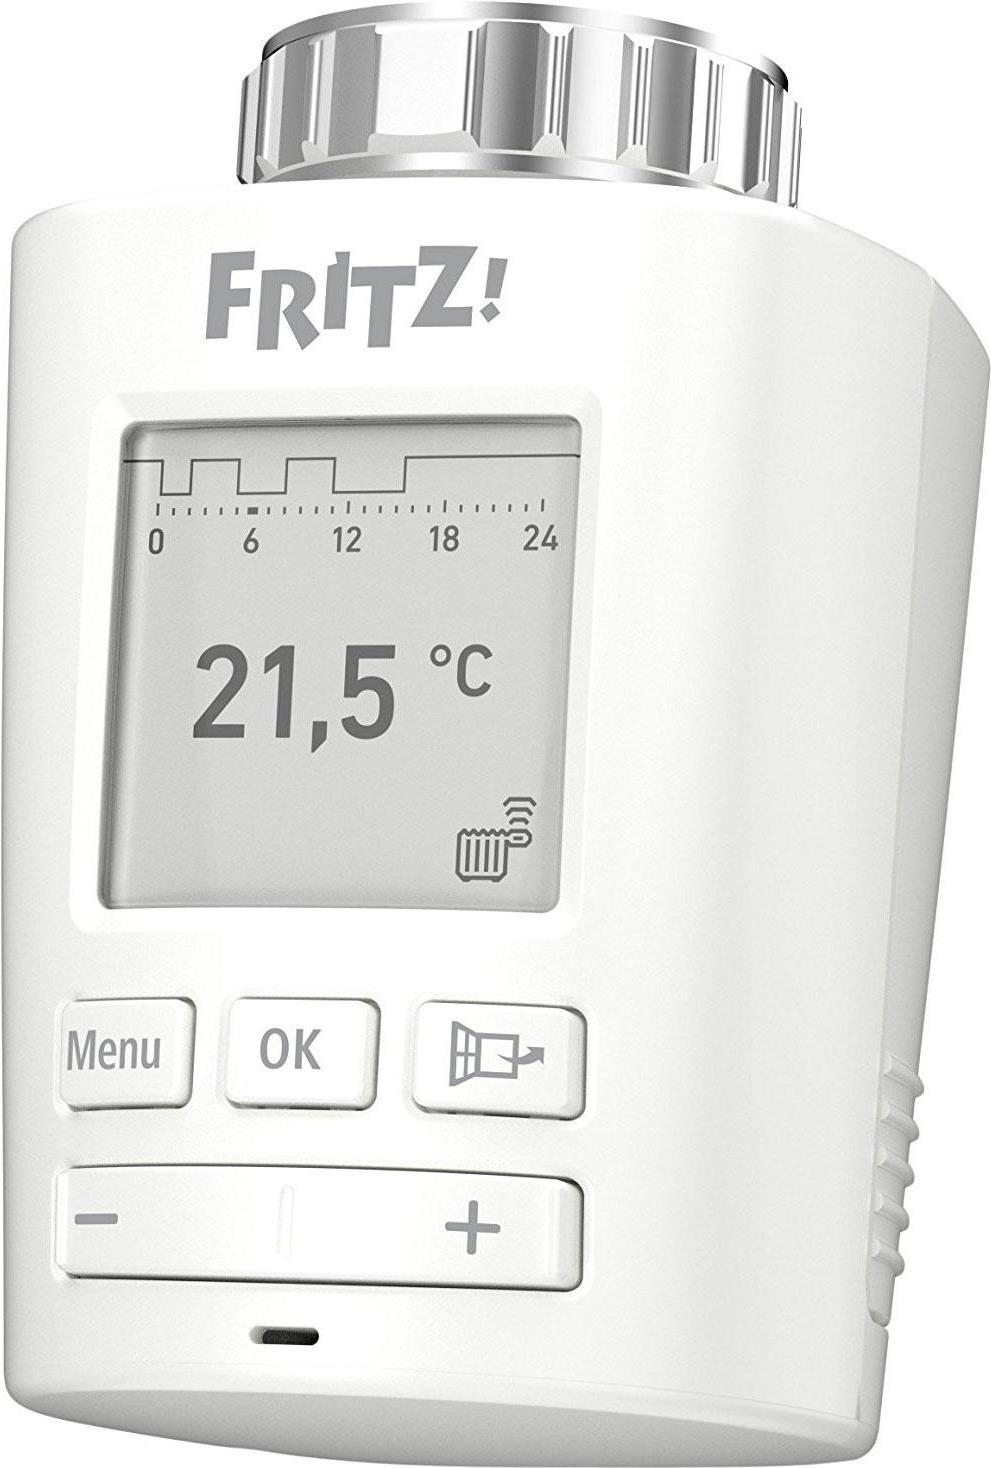 AVM FRITZ!DECT 301 - Der intelligente Heizkörperregler für das Heimnetz (20002822)